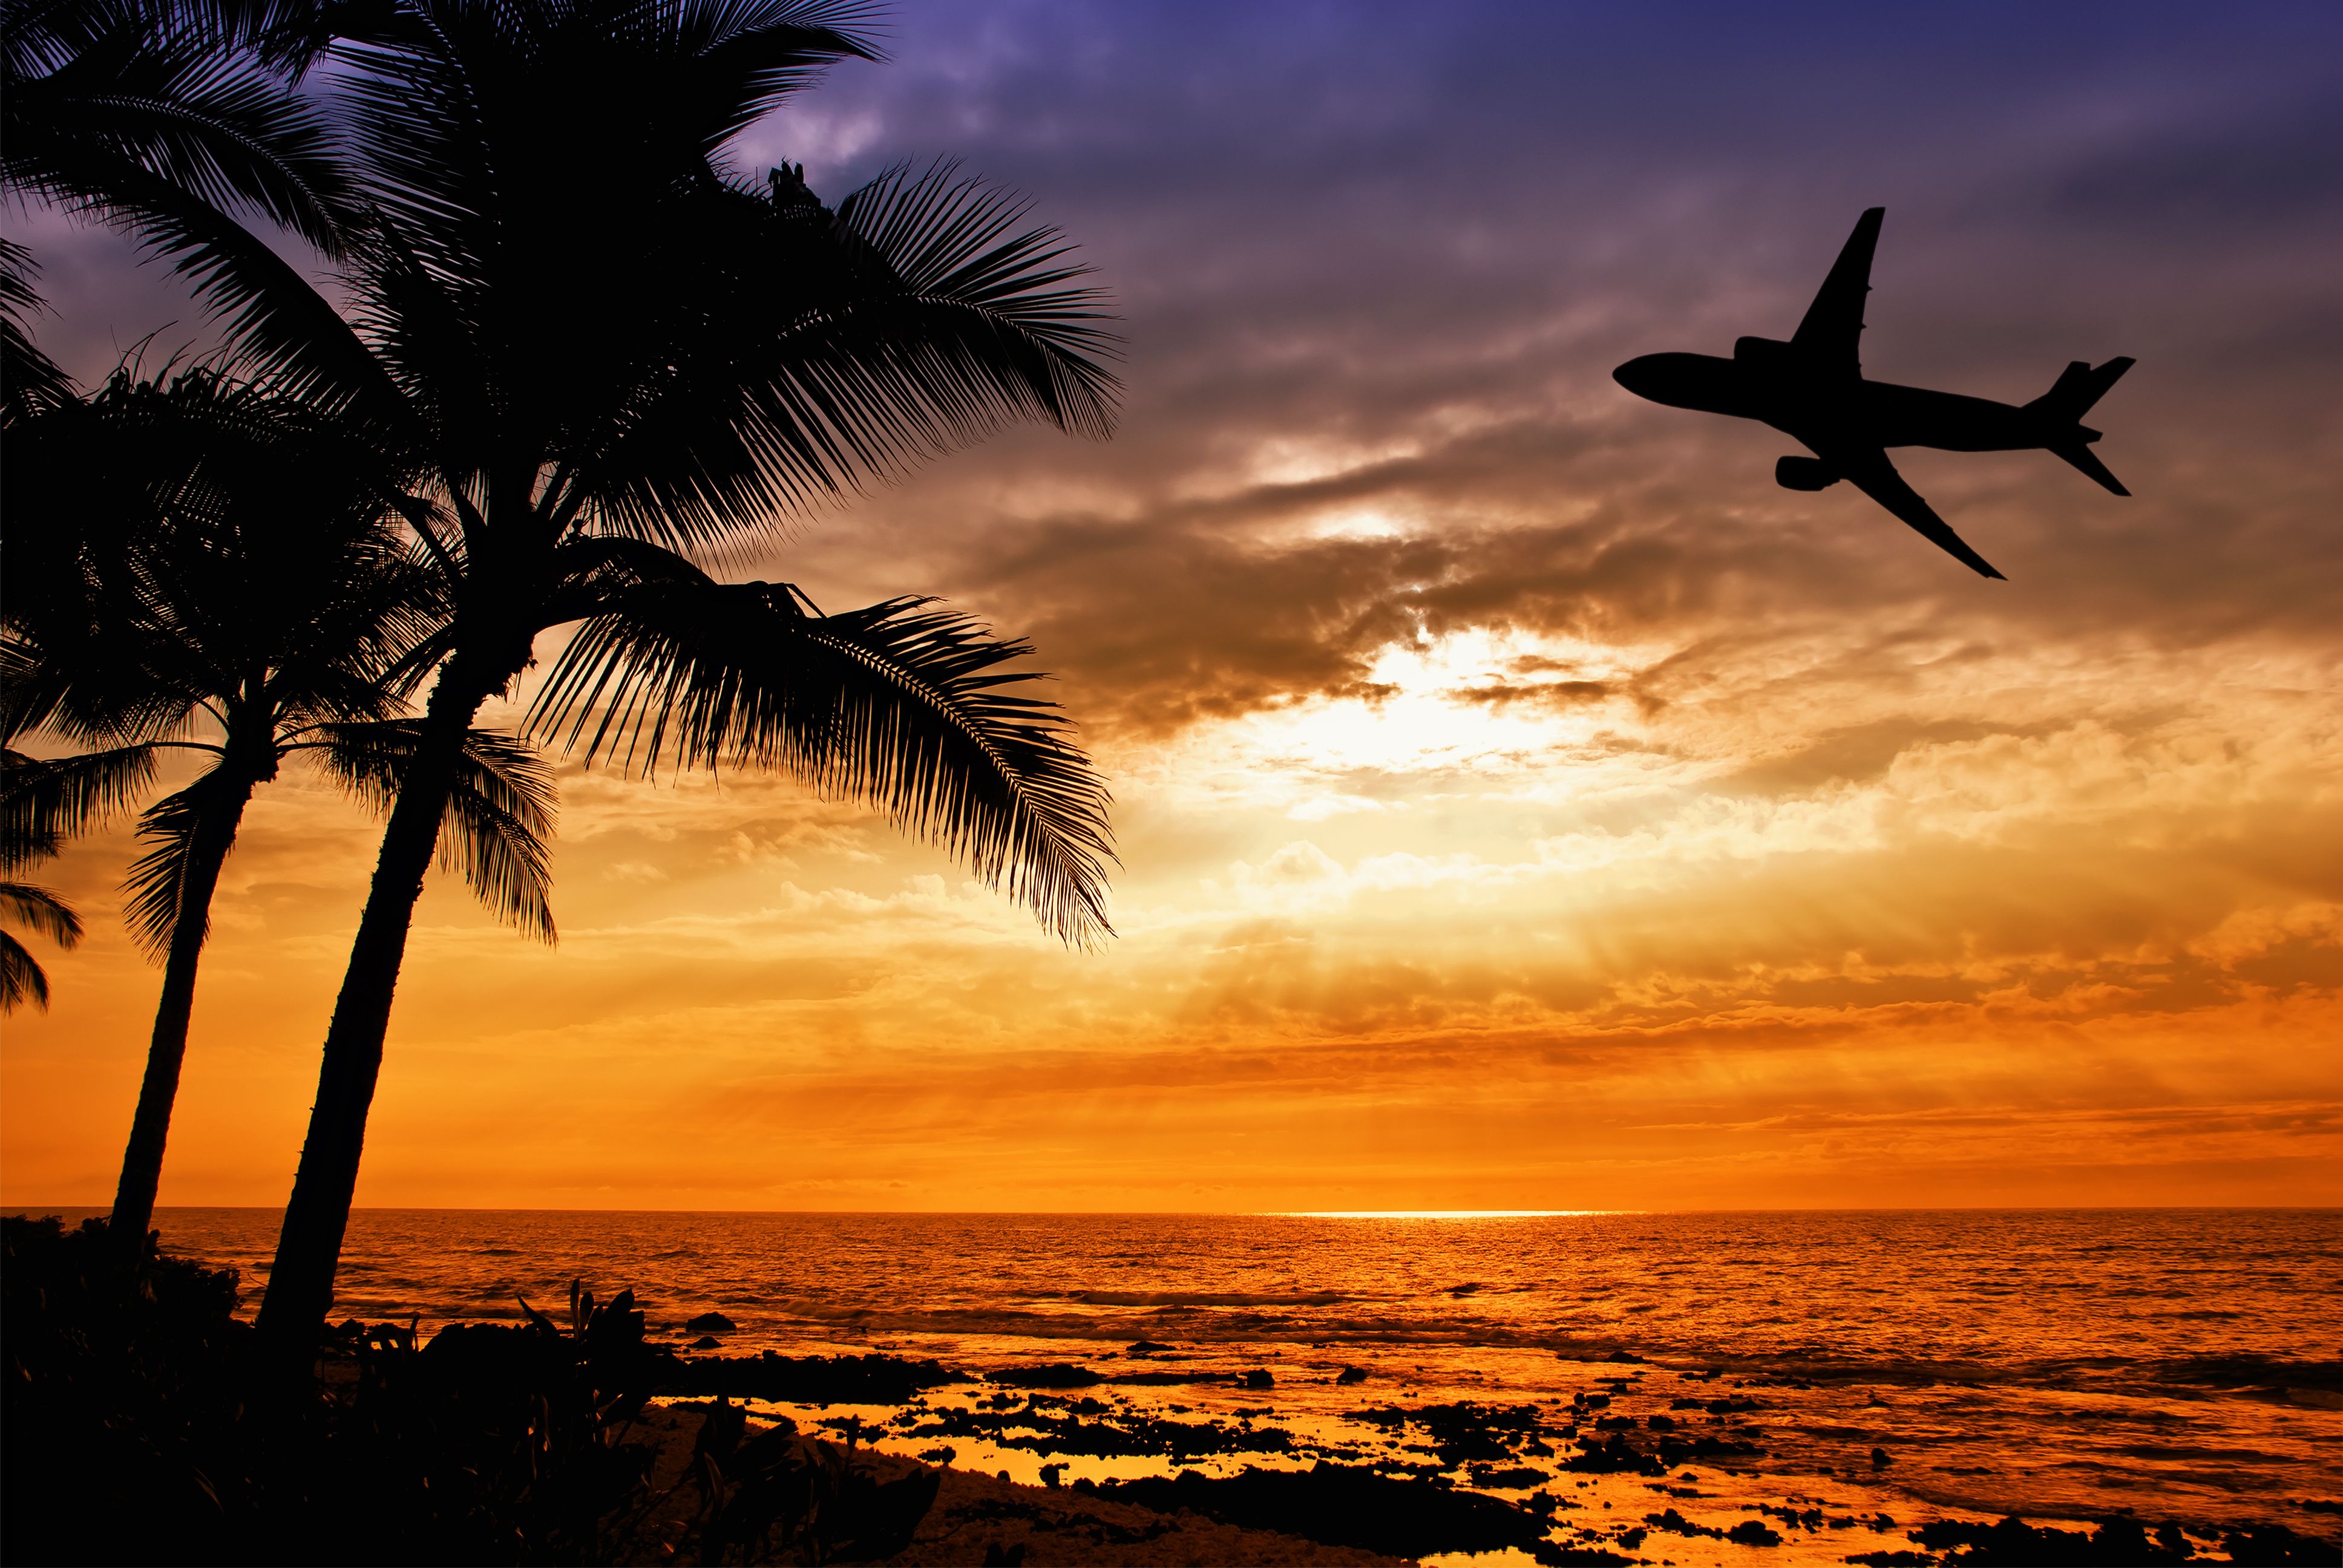 Solnedgång med palmträd och flygplankonturer